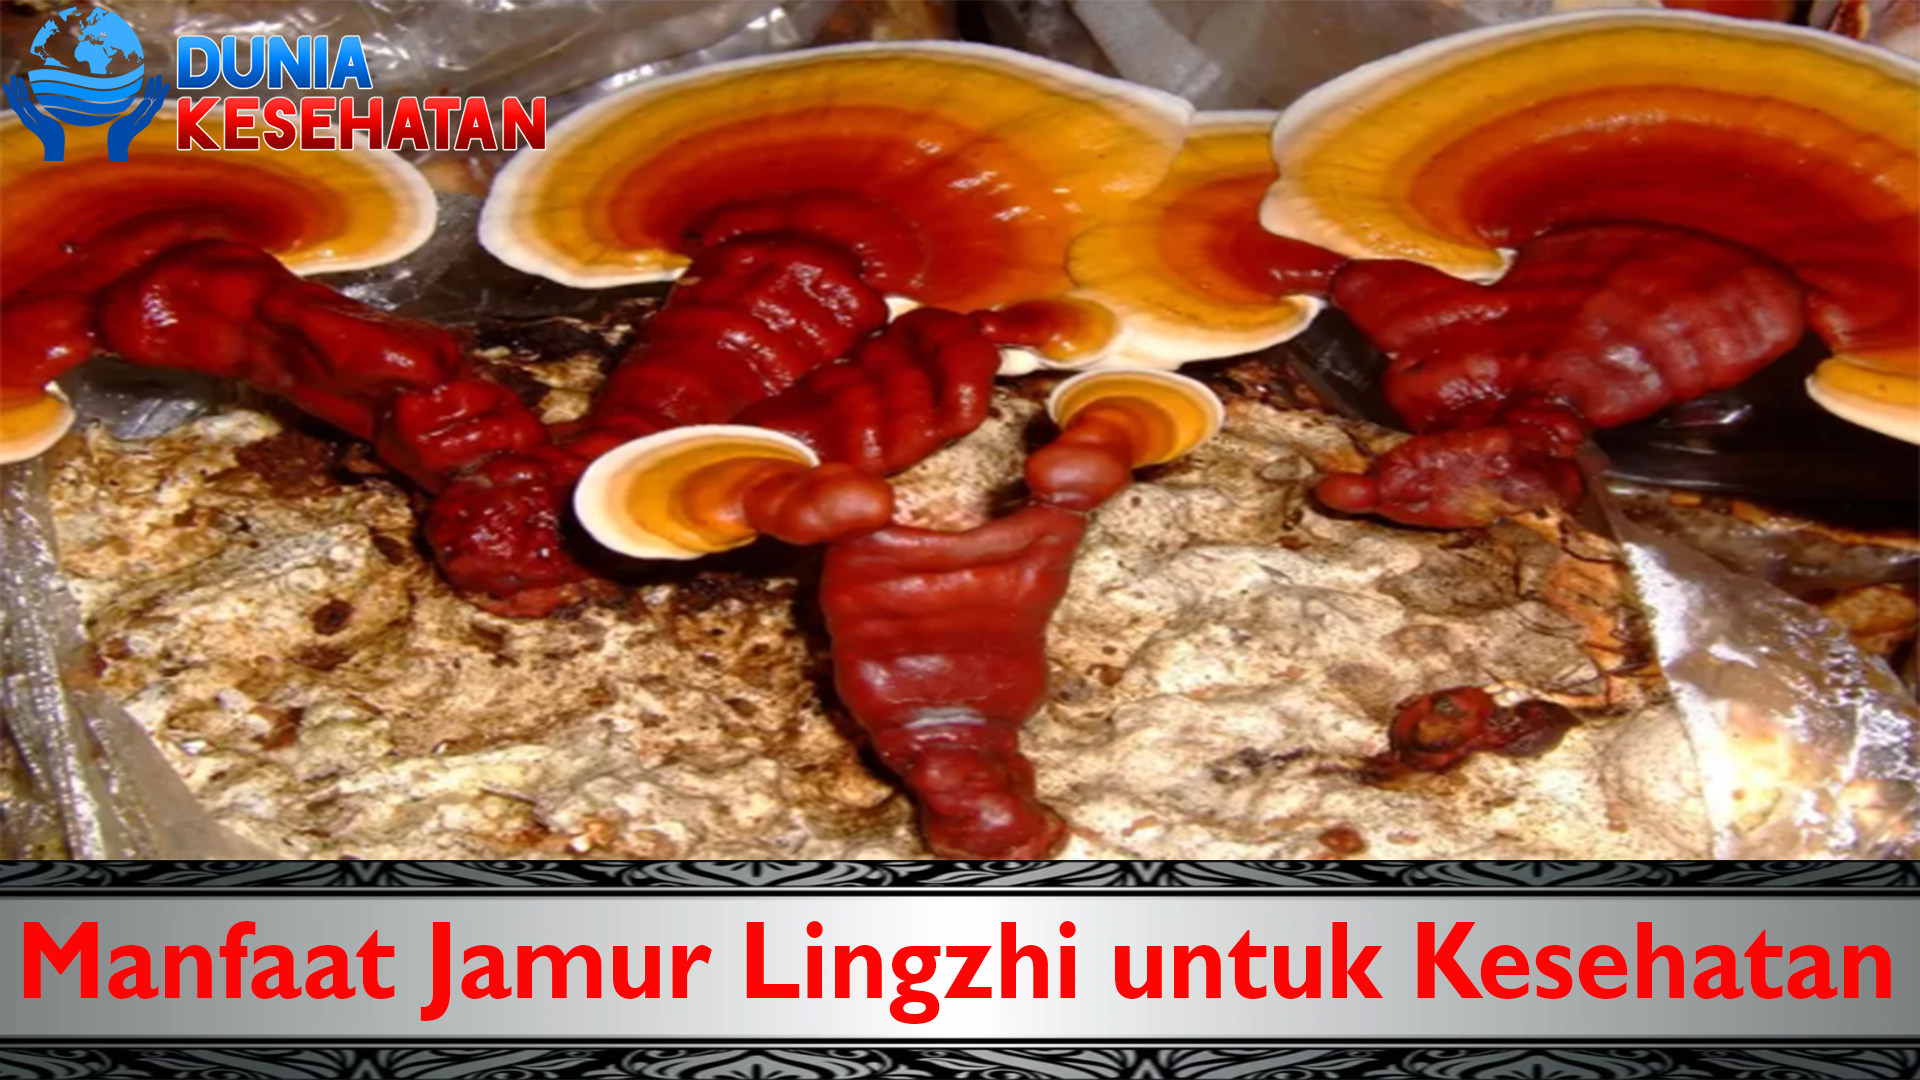 Manfaat Jamur Lingzhi untuk Kesehatan